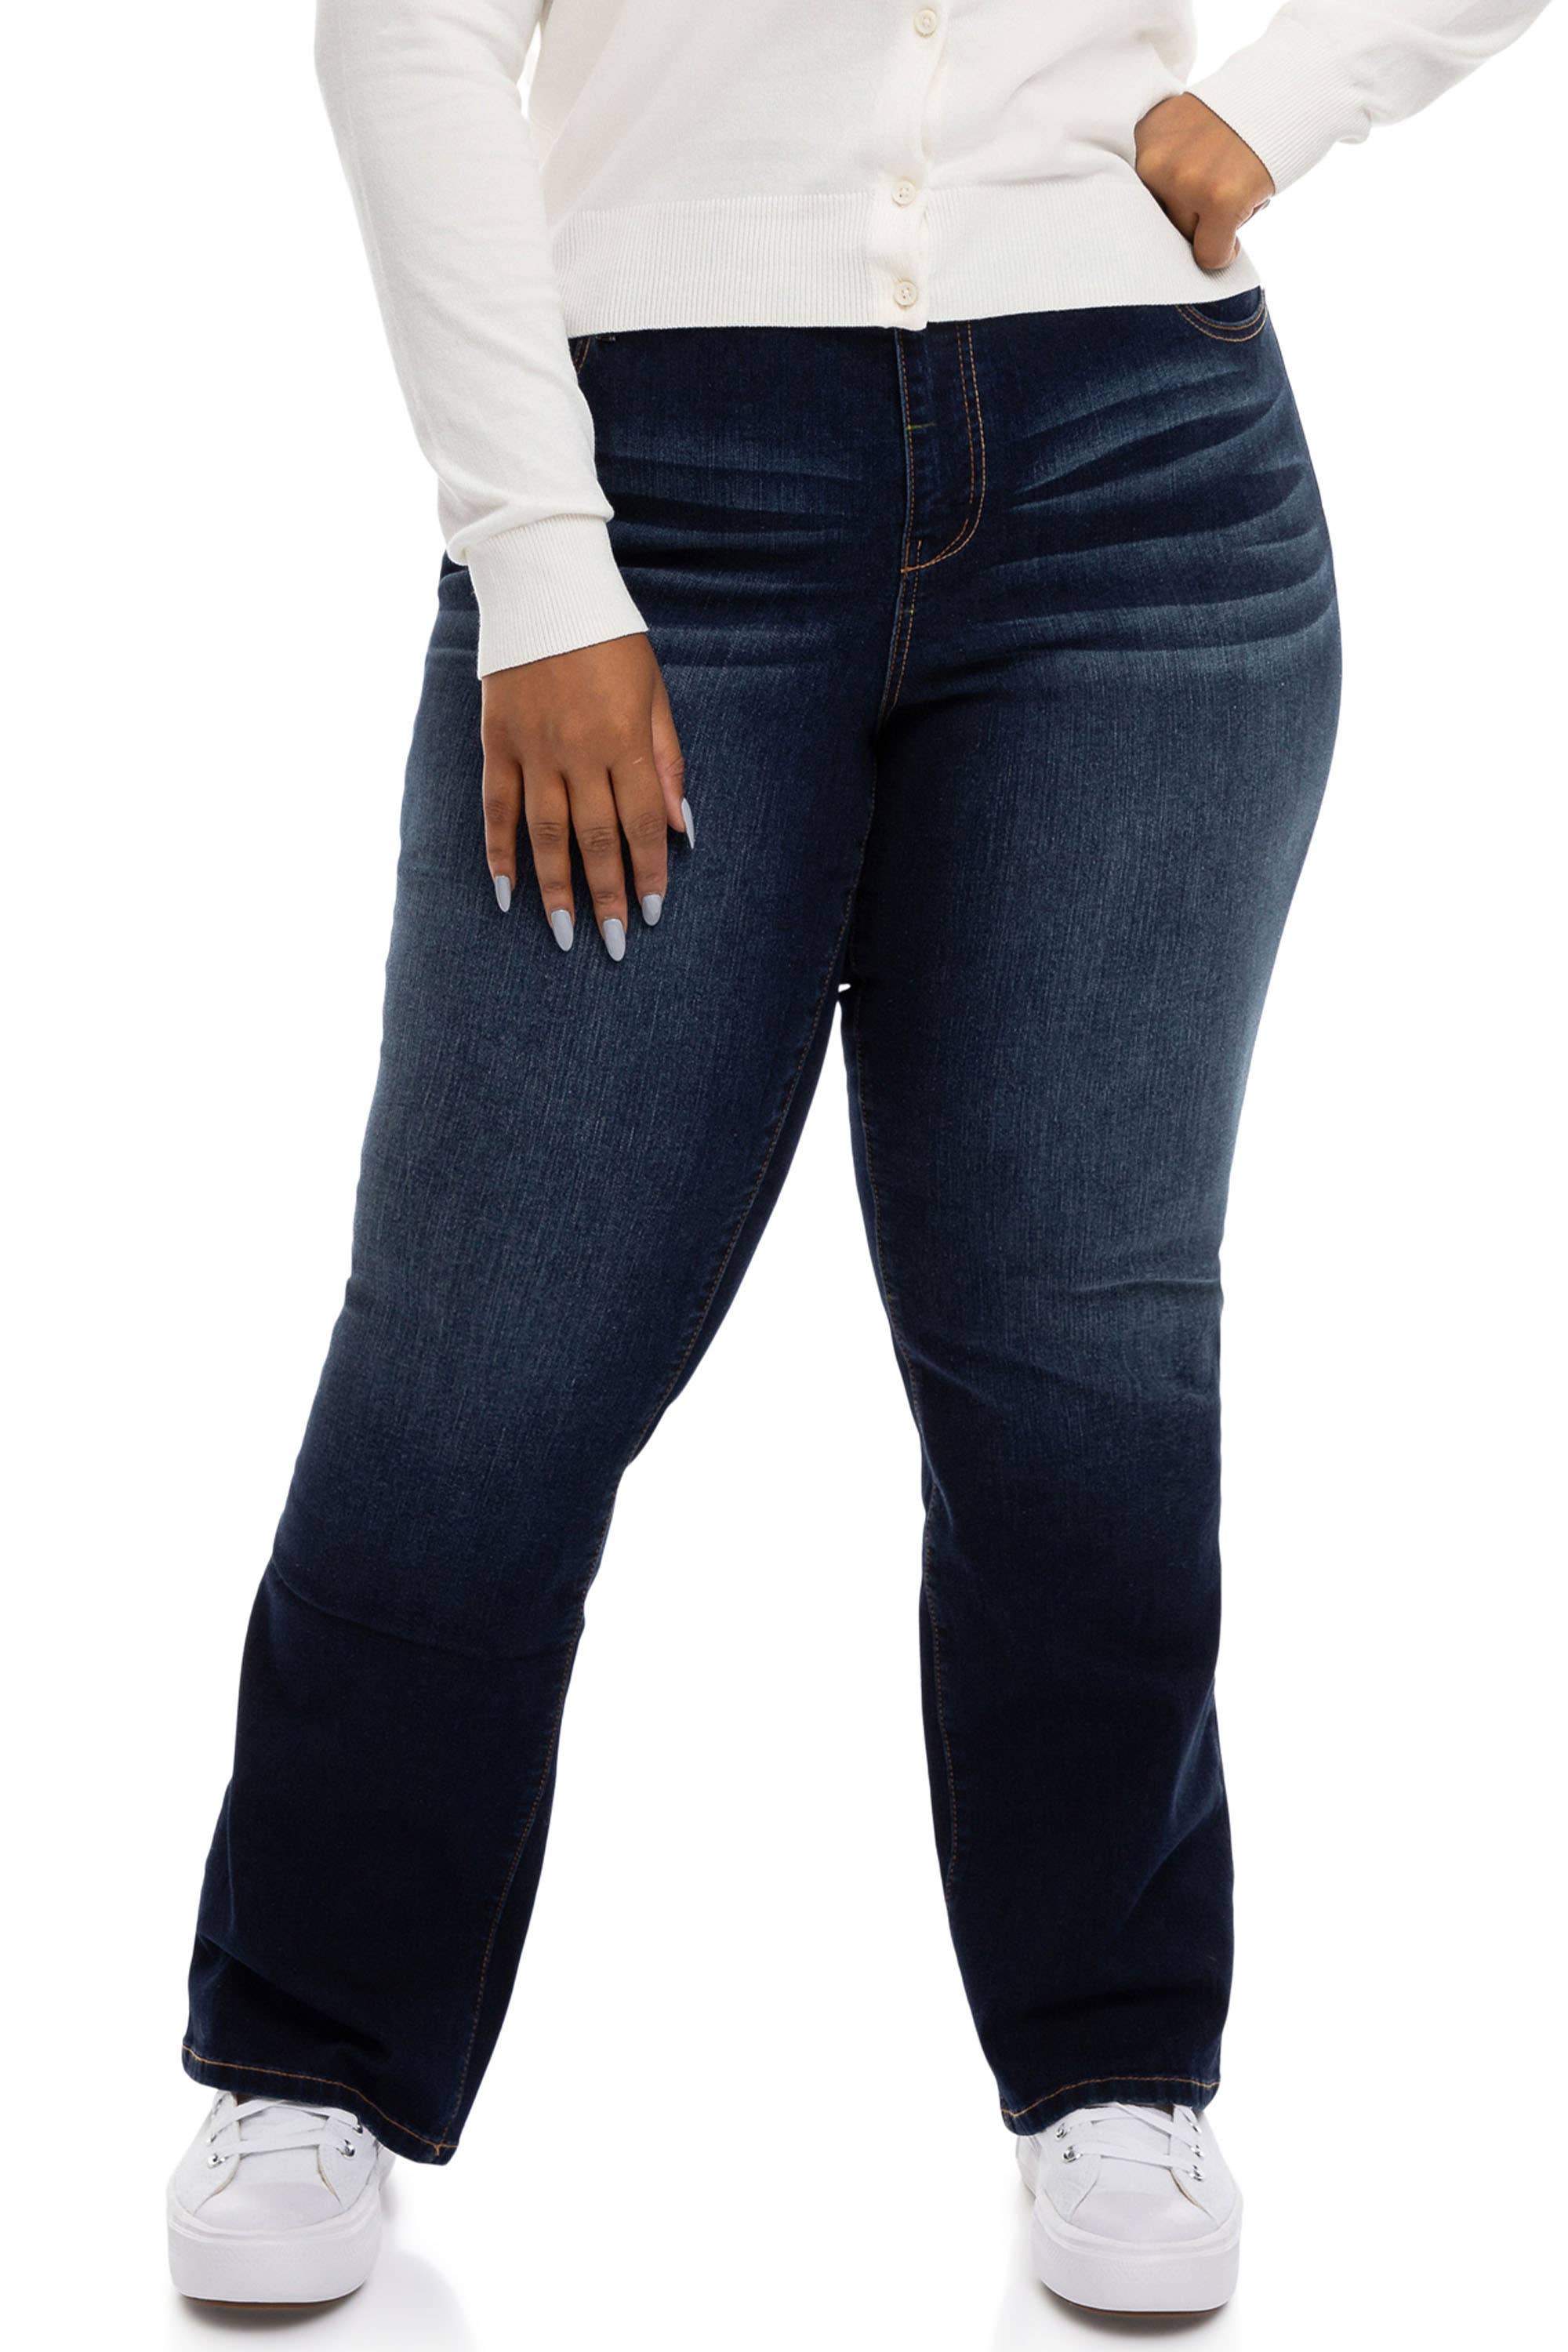 Baqcunre Women's Retro Plus Size Slim Fit Mid-Rise Sexy Stretch Jeans,Size  S-3XL,Bootcut Jeans for Women,Womens Jeans,Joggers for Women,Womens Clothes,Color  Blue 